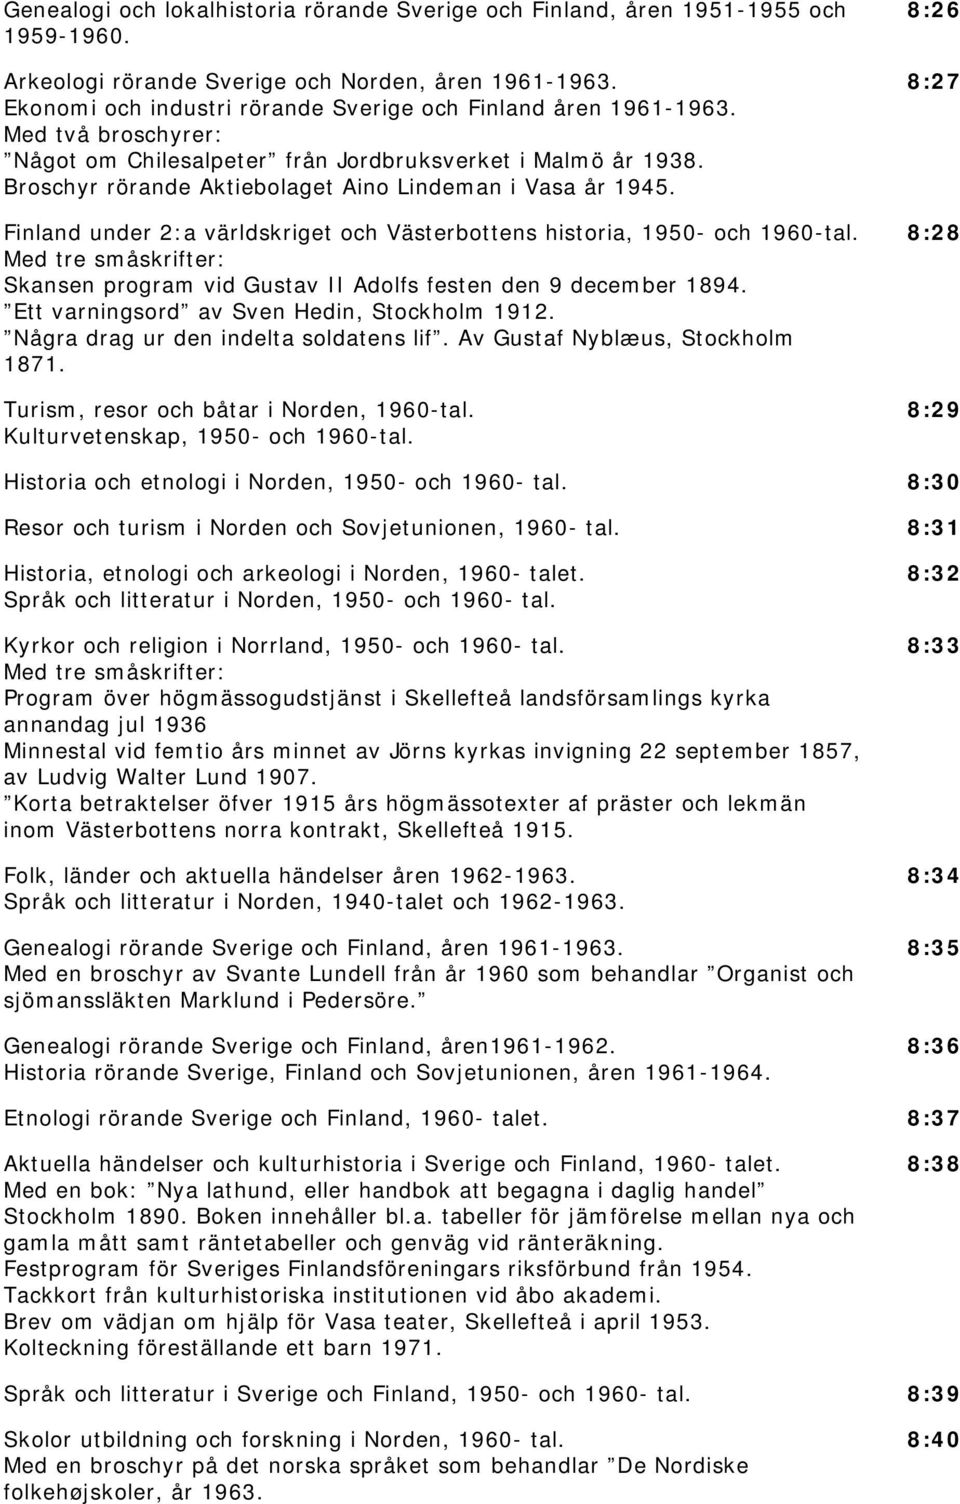 Broschyr rörande Aktiebolaget Aino Lindeman i Vasa år 1945. Finland under 2:a världskriget och Västerbottens historia, 1950- och 1960-tal.